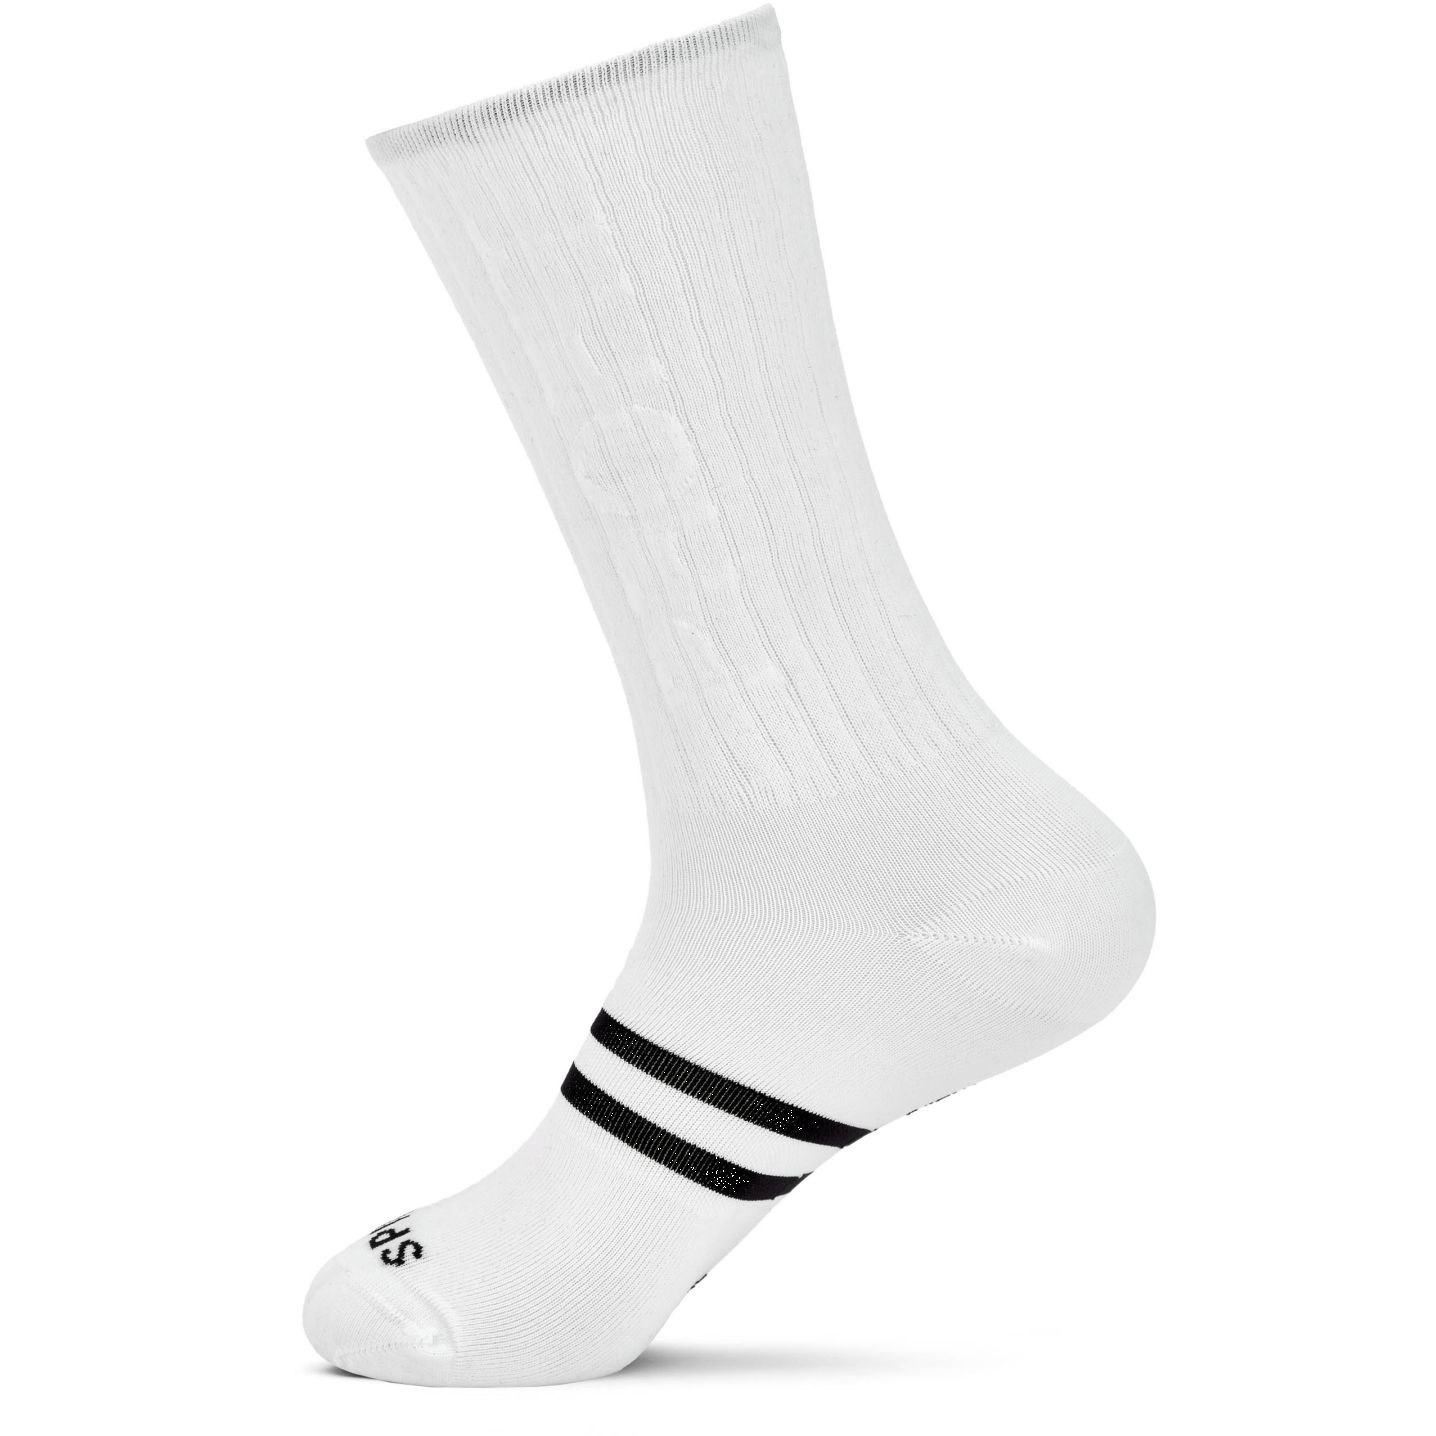 Produktbild von Spiuk PROFIT Lange Socken - weiß